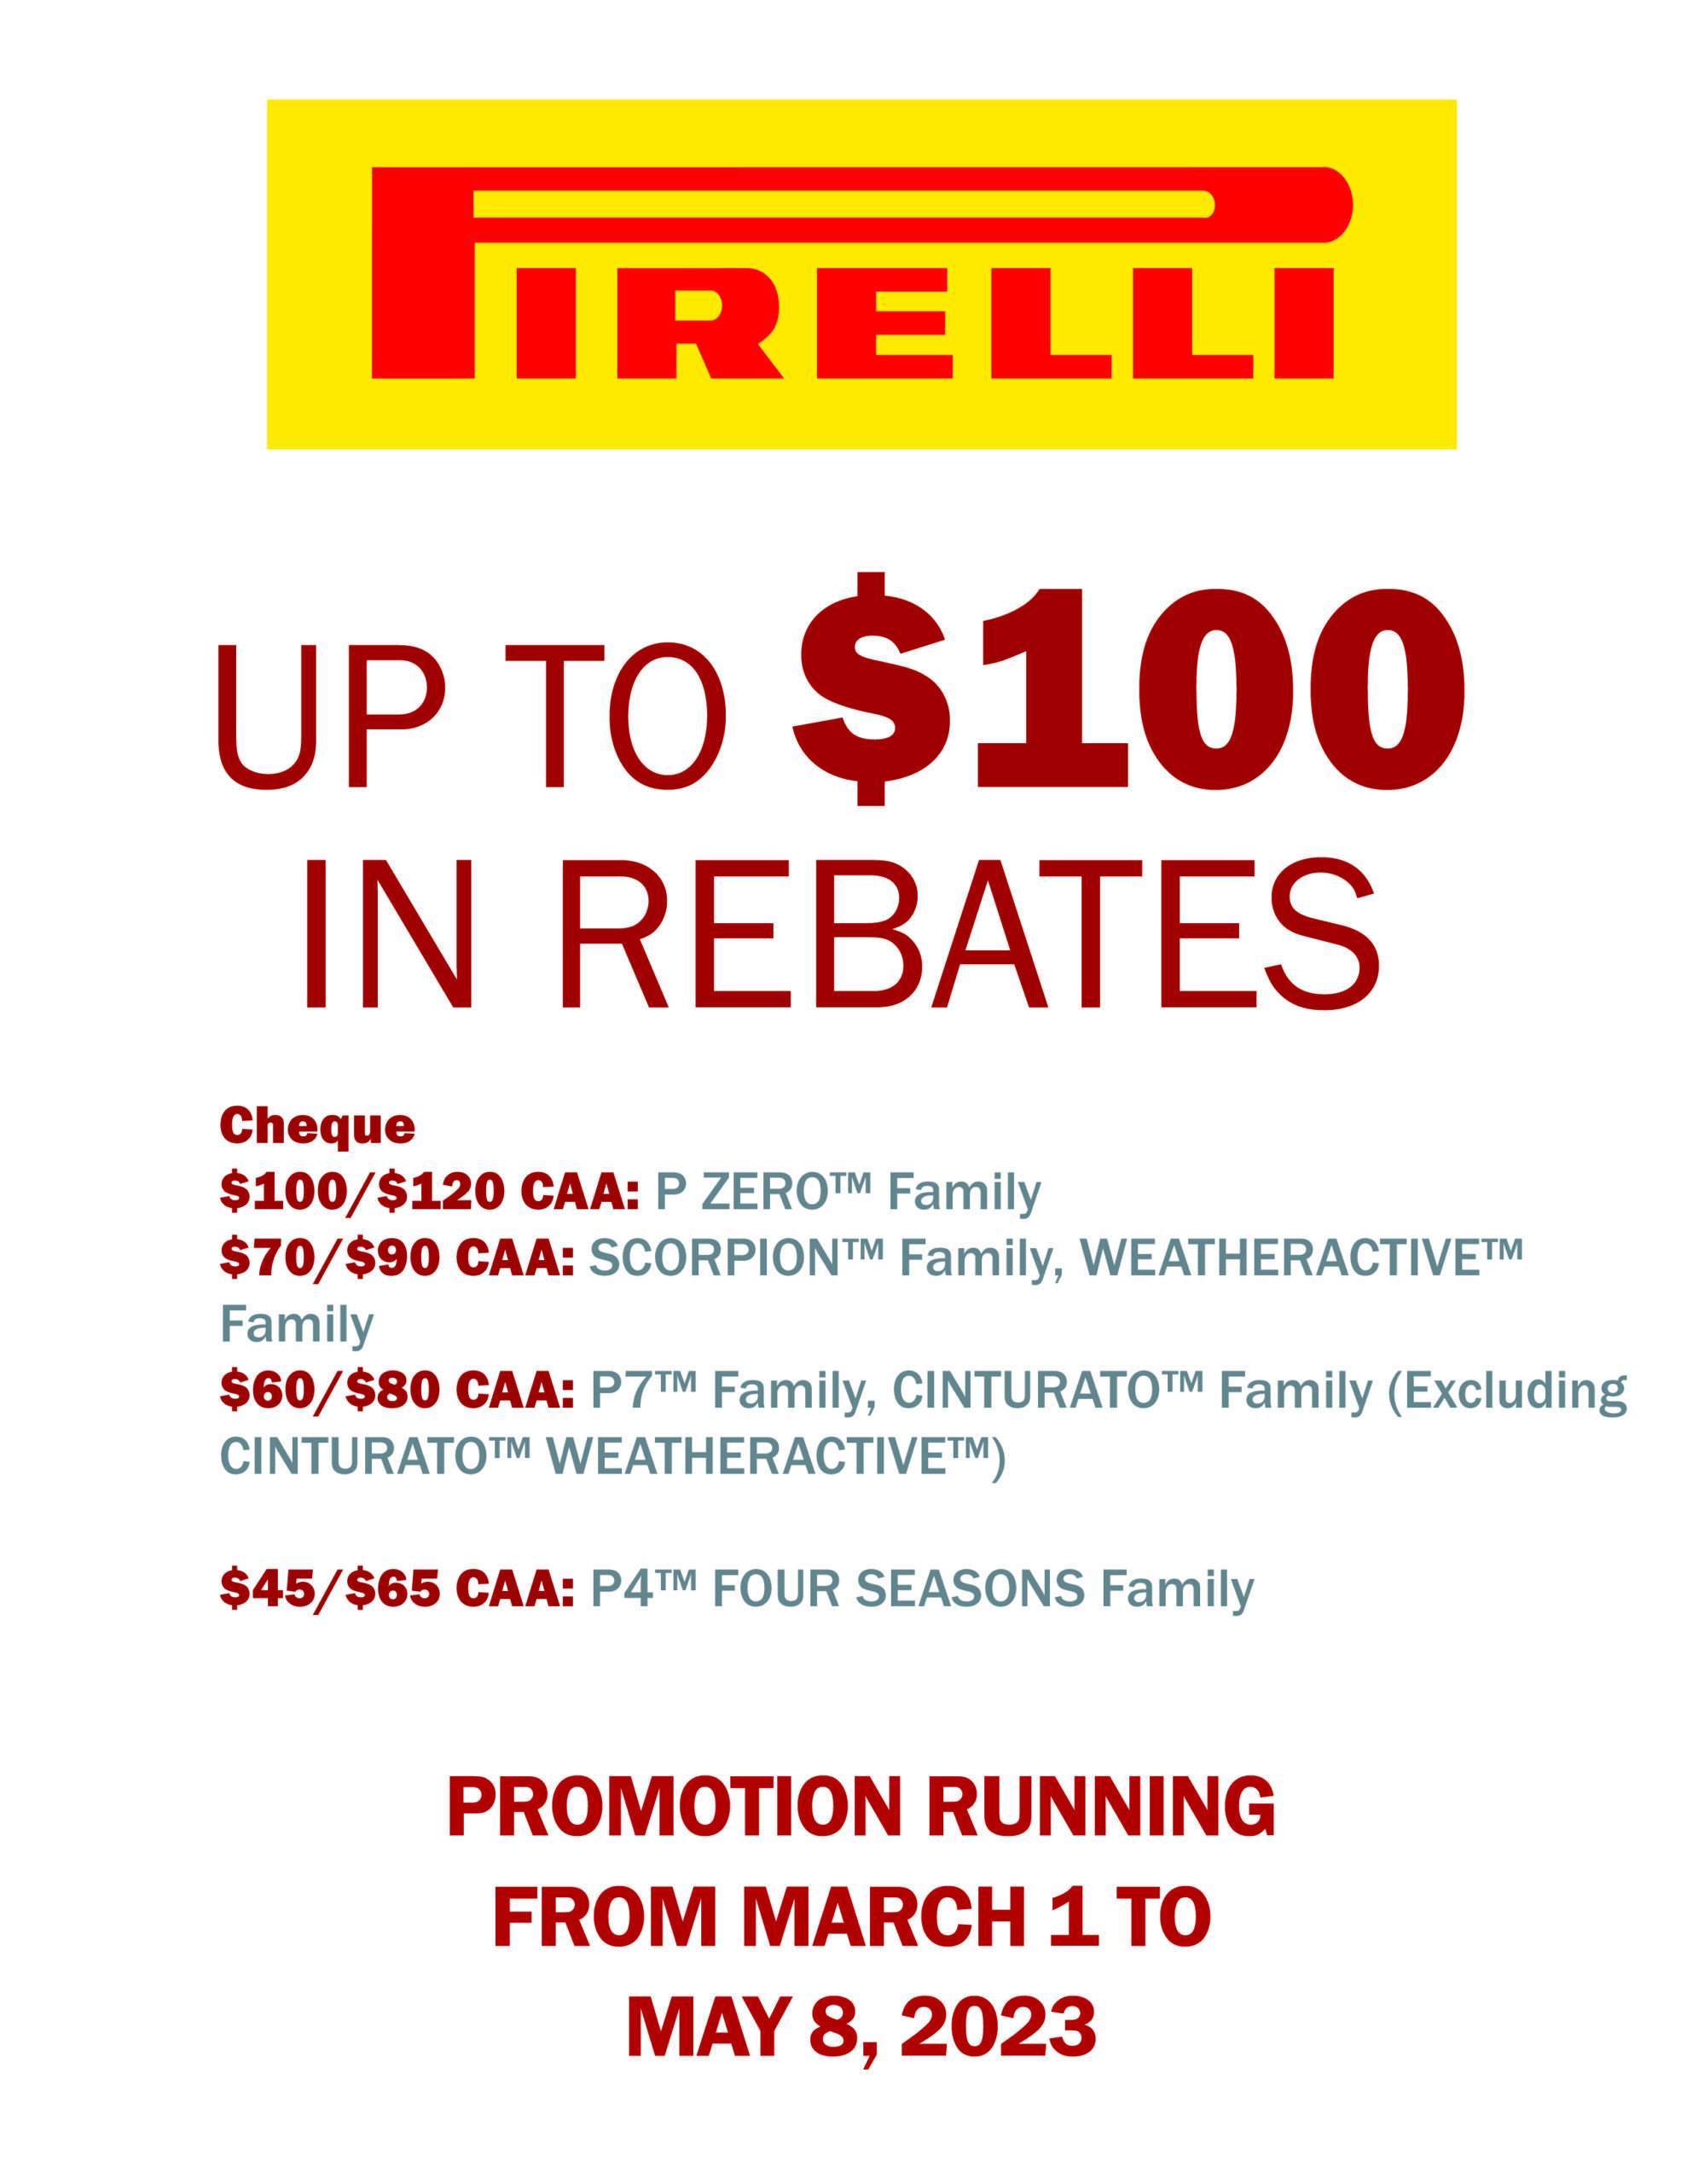 pirelli-spring-2023-rebate-motion-tyres